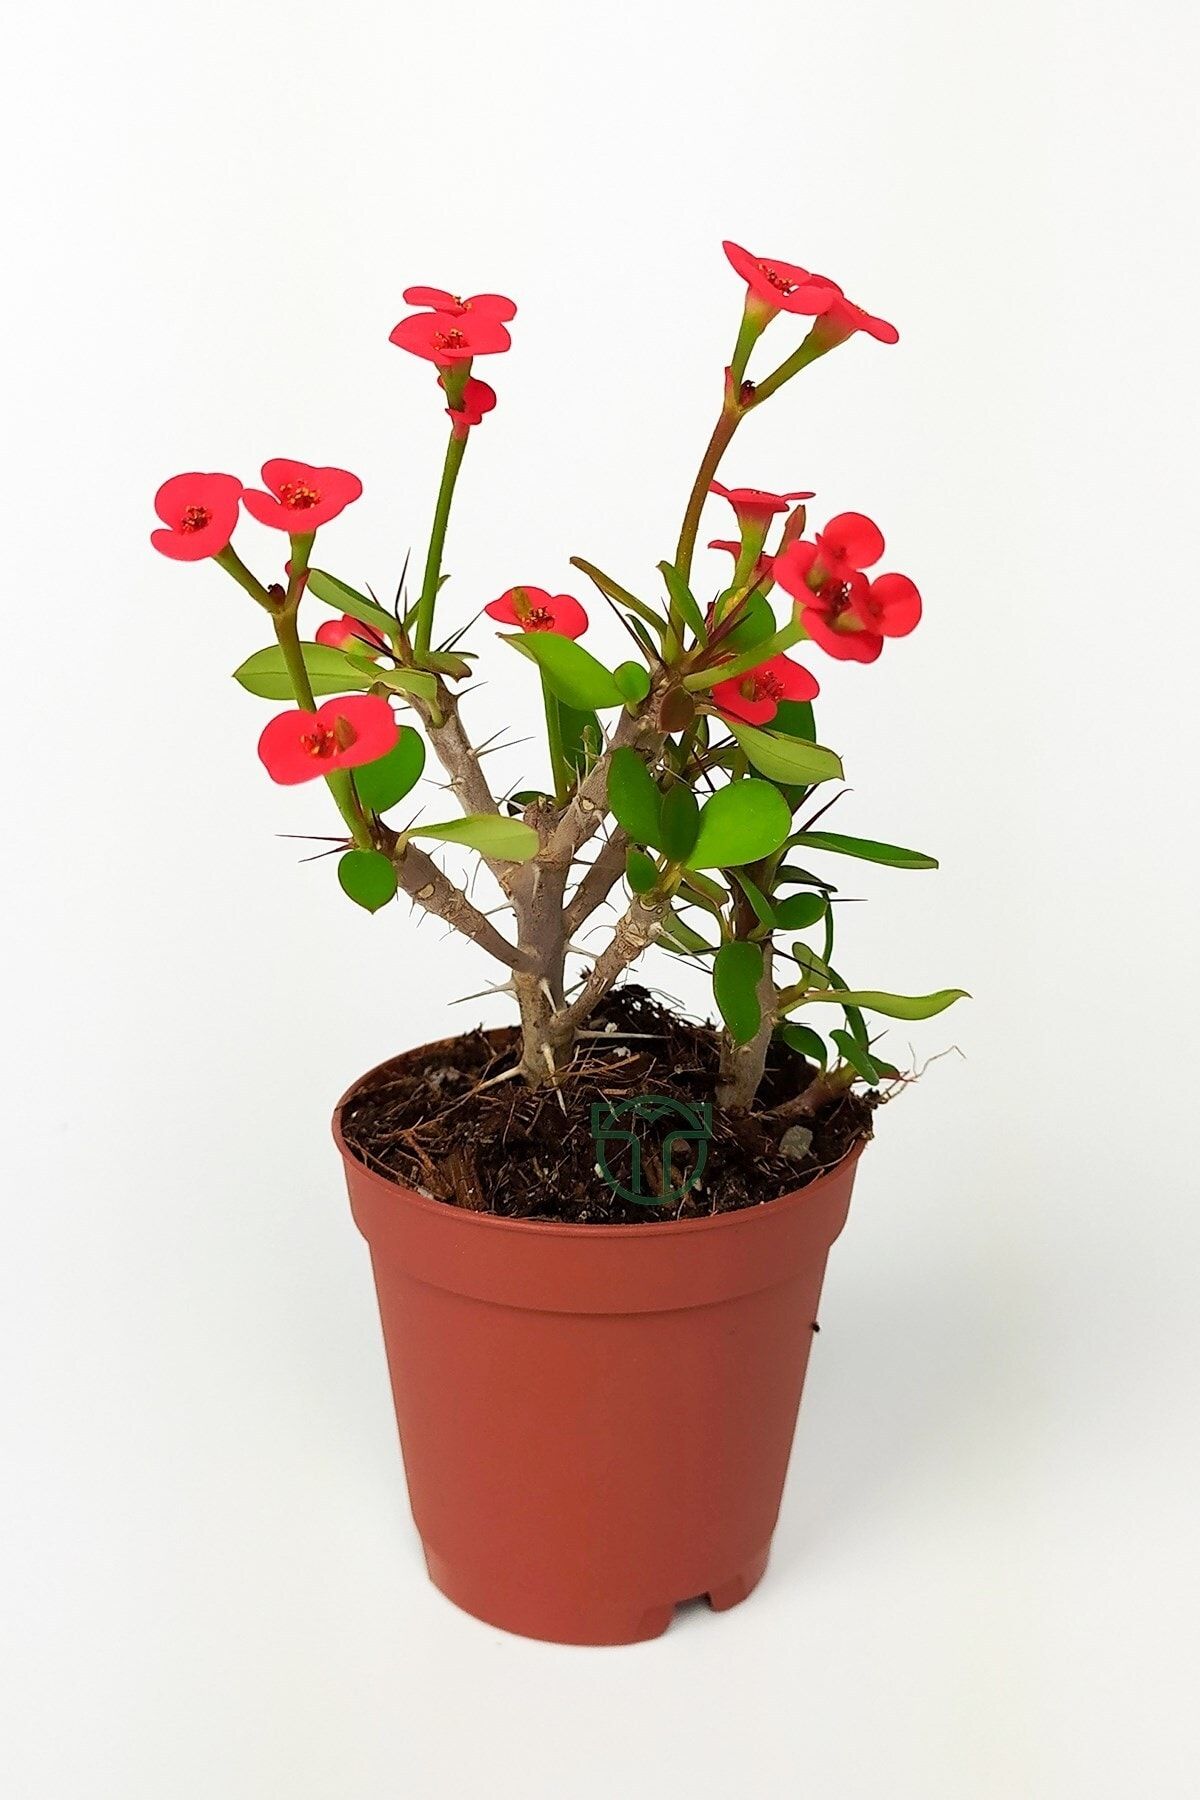 Toptan Kaktüs Dikenler Tacı Euphorbia Miili Mini Kırmızı Çiçekli Kaktüs Kral Tacı Dikenli Taç 5.5 Cm Saksıda